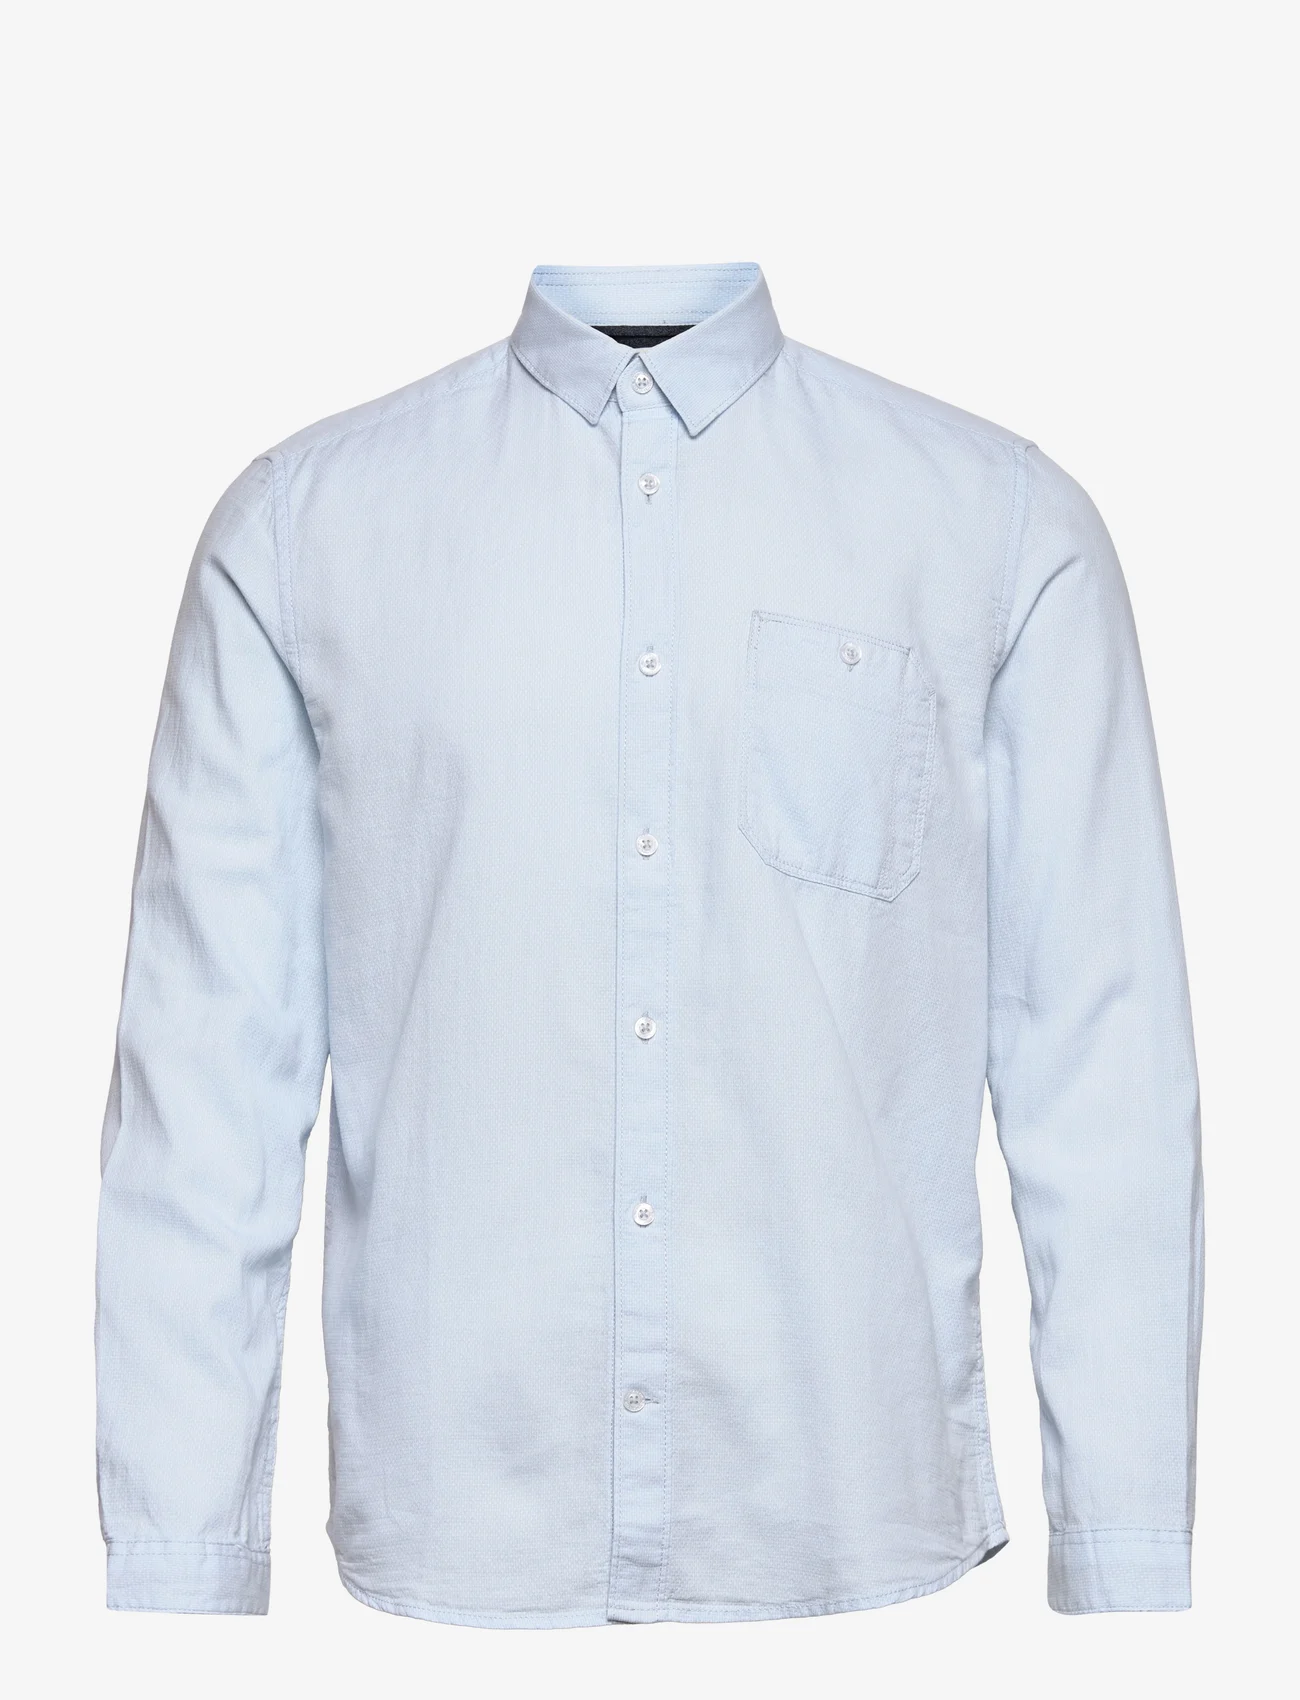 Tom Tailor - structured shirt - basic skjorter - light blue white structure - 0